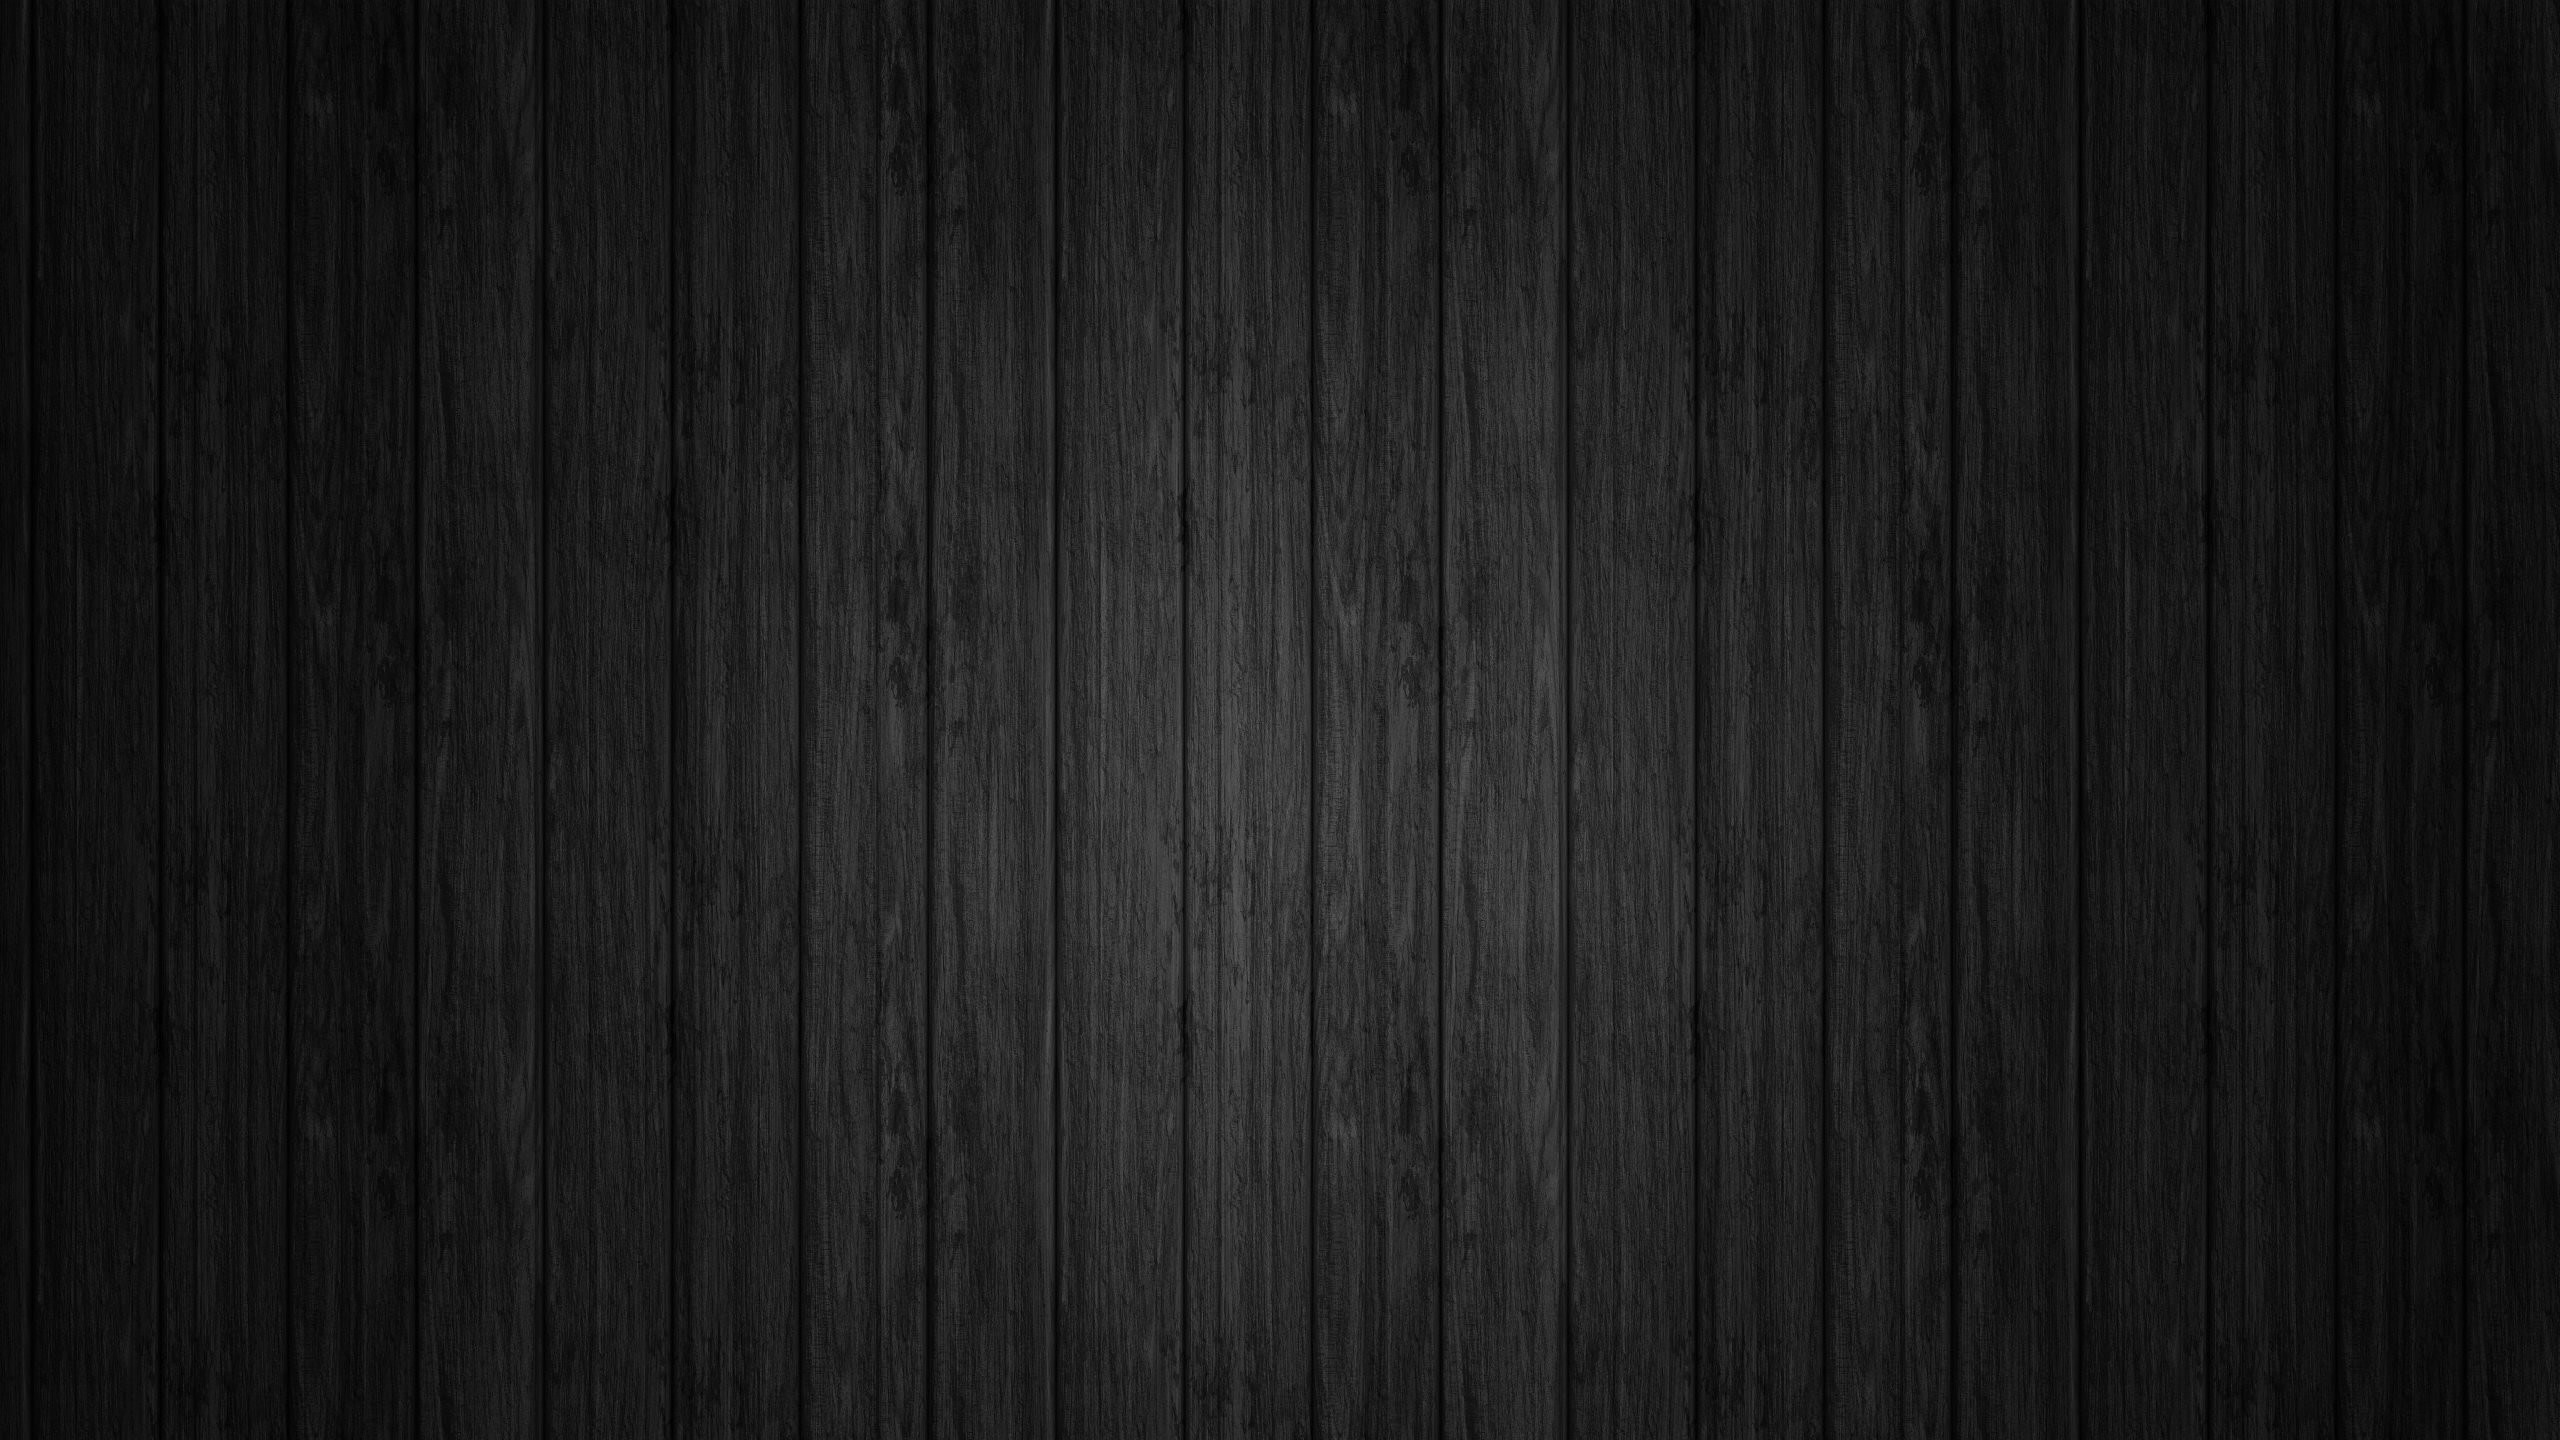 Dark Wood Texture Wallpaper for Desktop 2560x1440